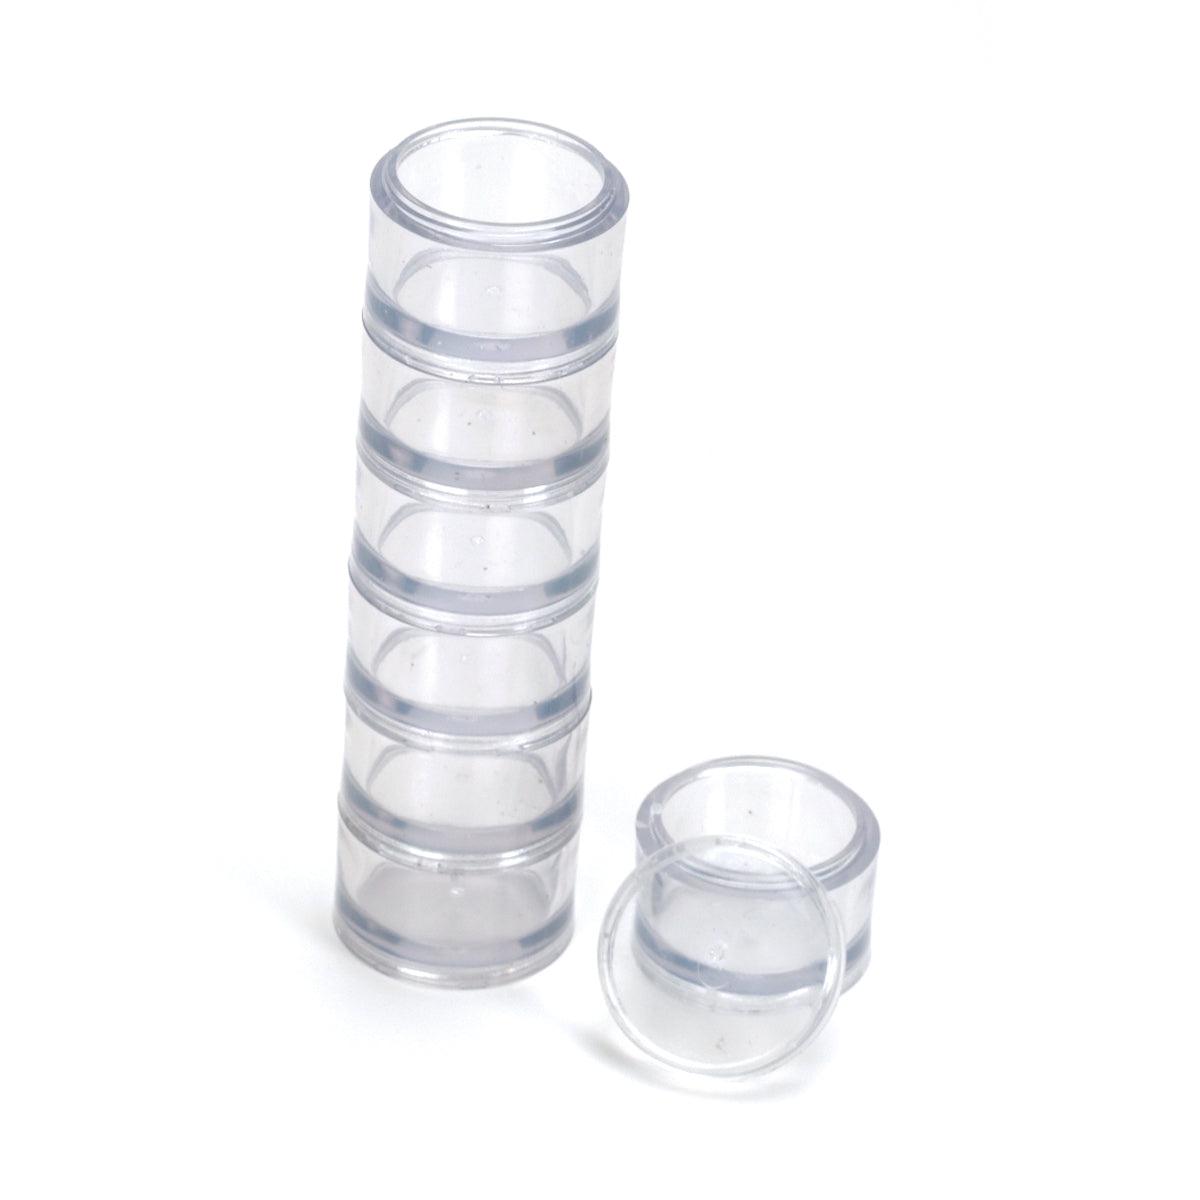 Transparent Round Plastic Small Container